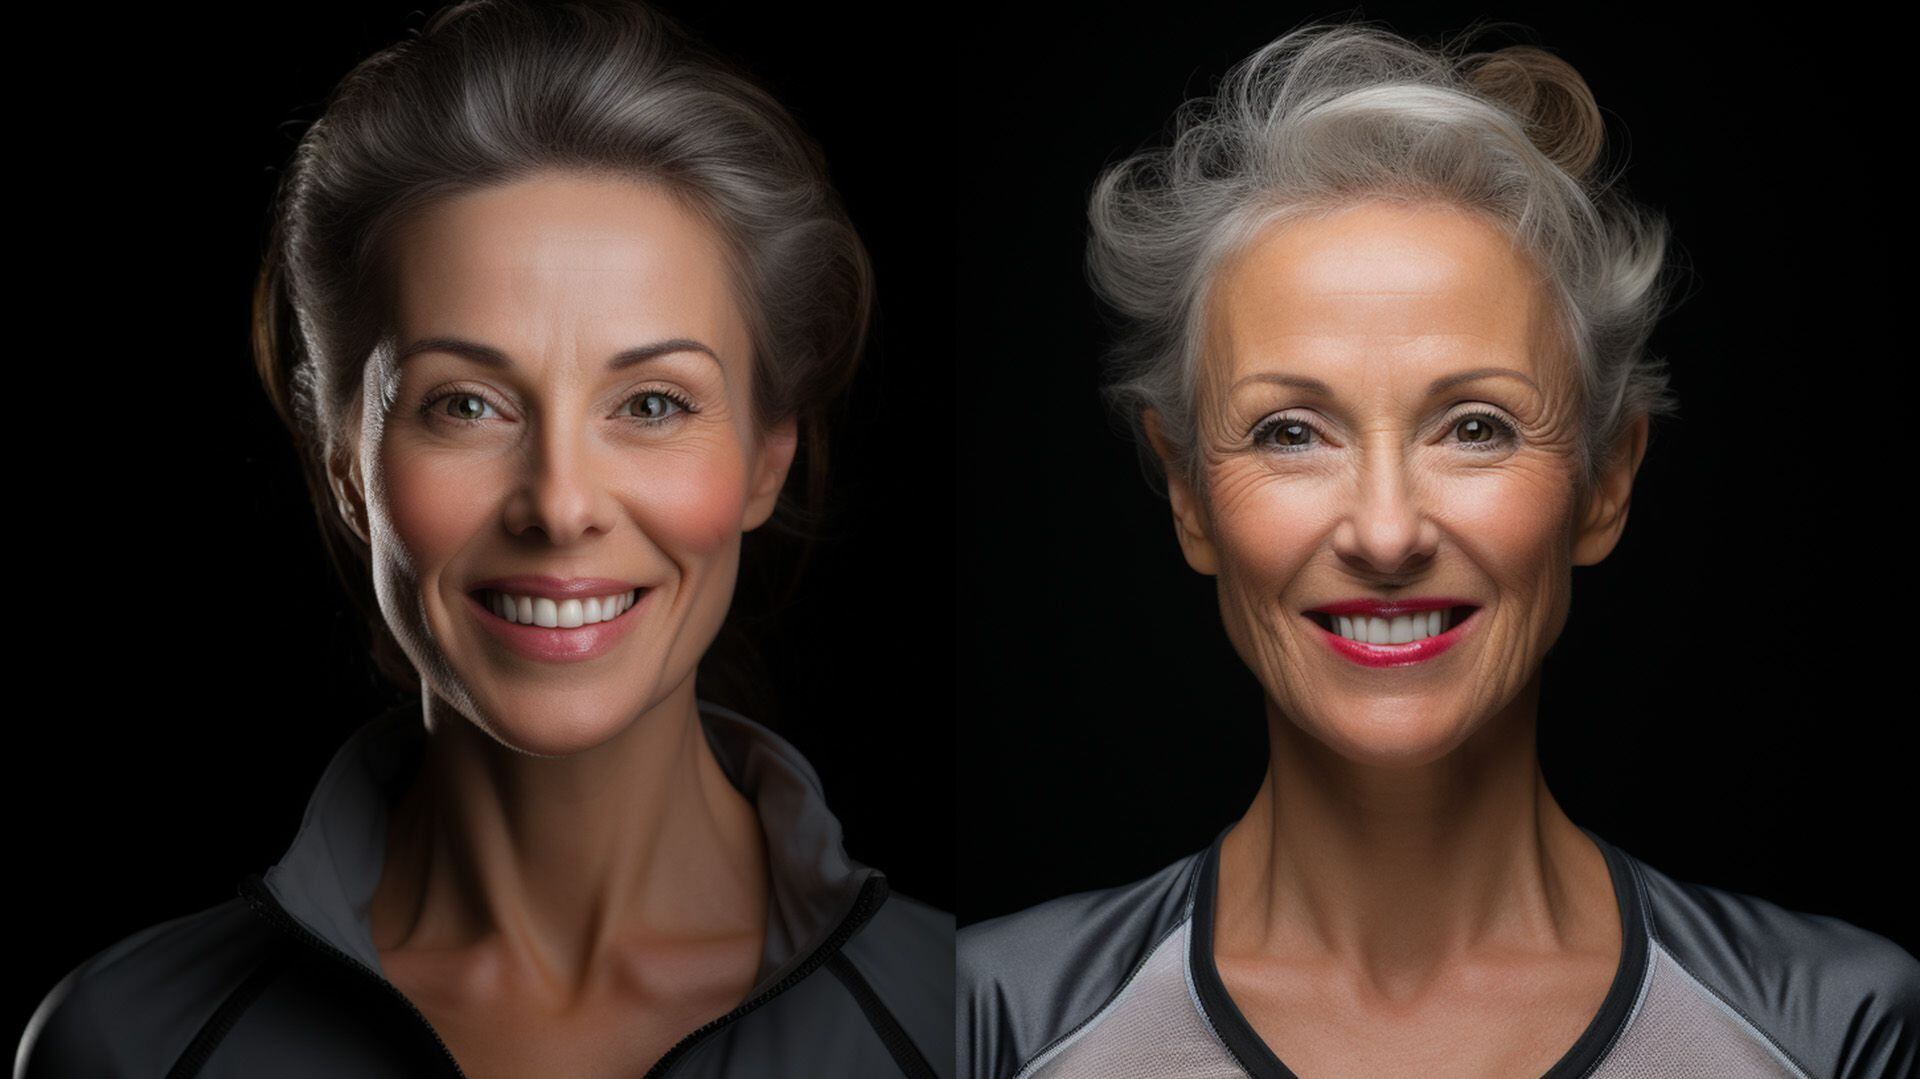 Primer plano de rostros, uno con signos visibles de envejecimiento y otro notablemente más joven, destacando el contraste y la eficacia de los tratamientos anti-envejecimiento.